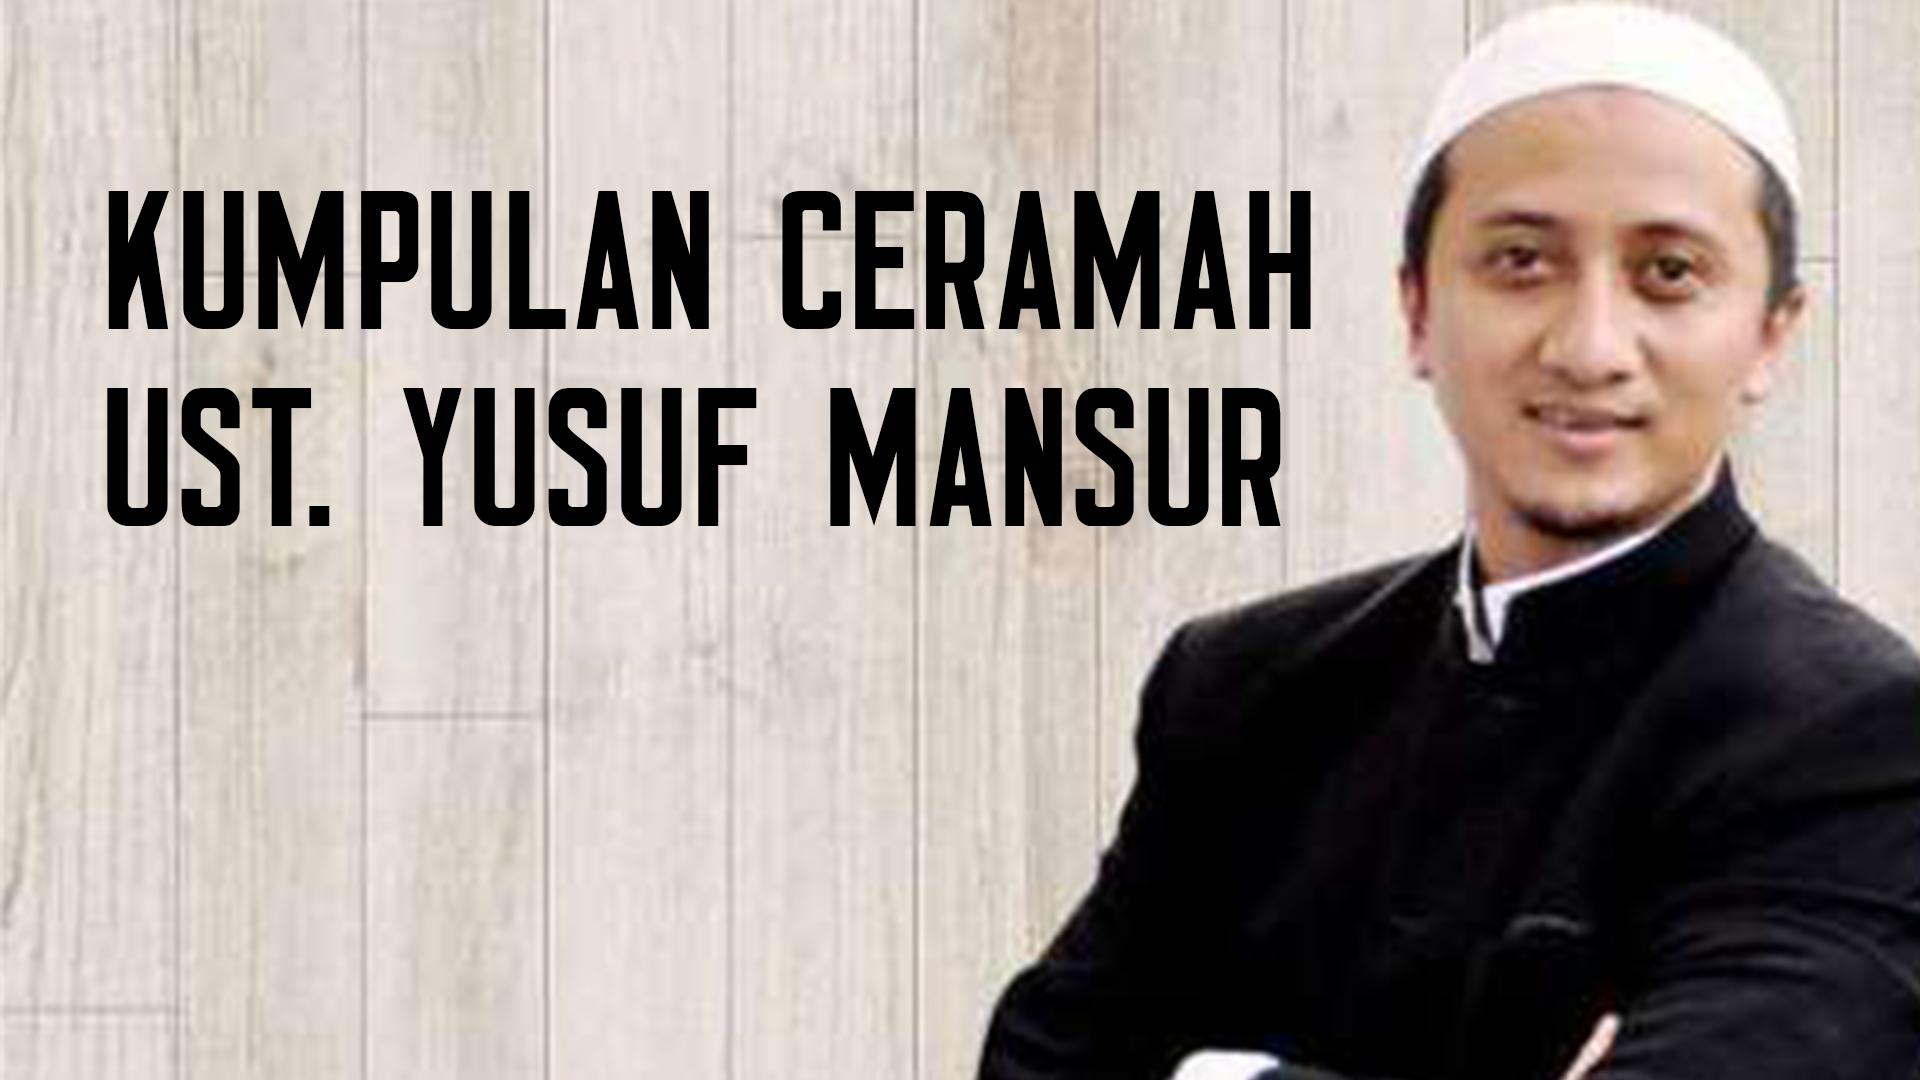 Kumpulan Ceramah Ustadz Yusuf Mansur For Android Apk Download